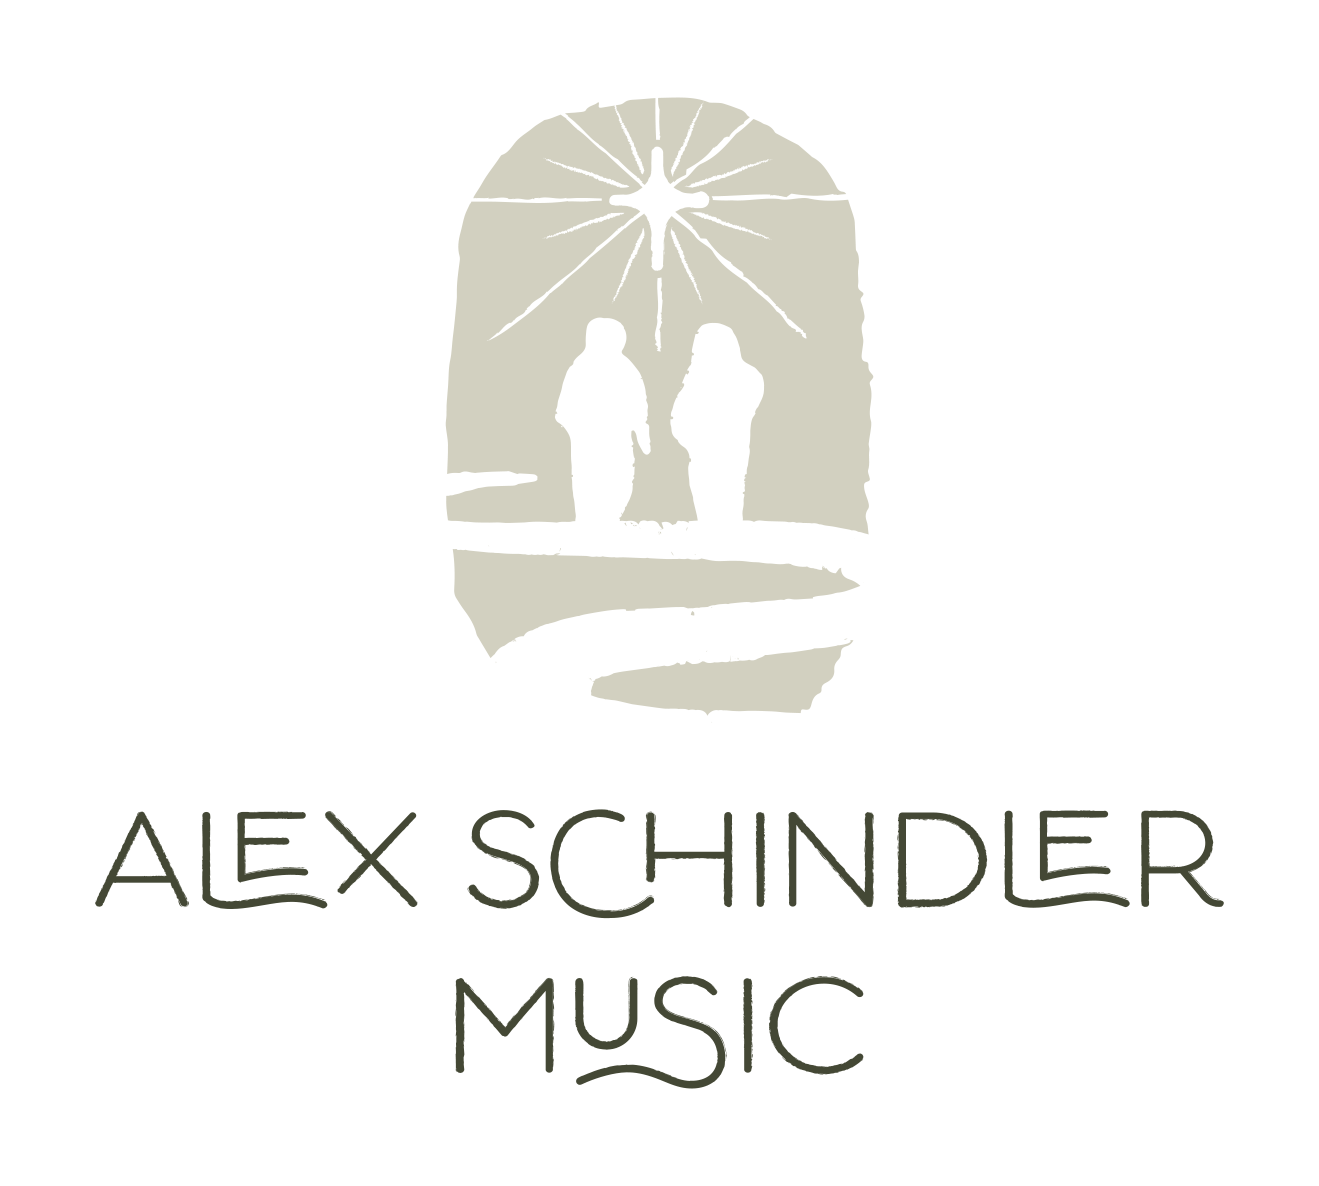 Alex Schindler Music